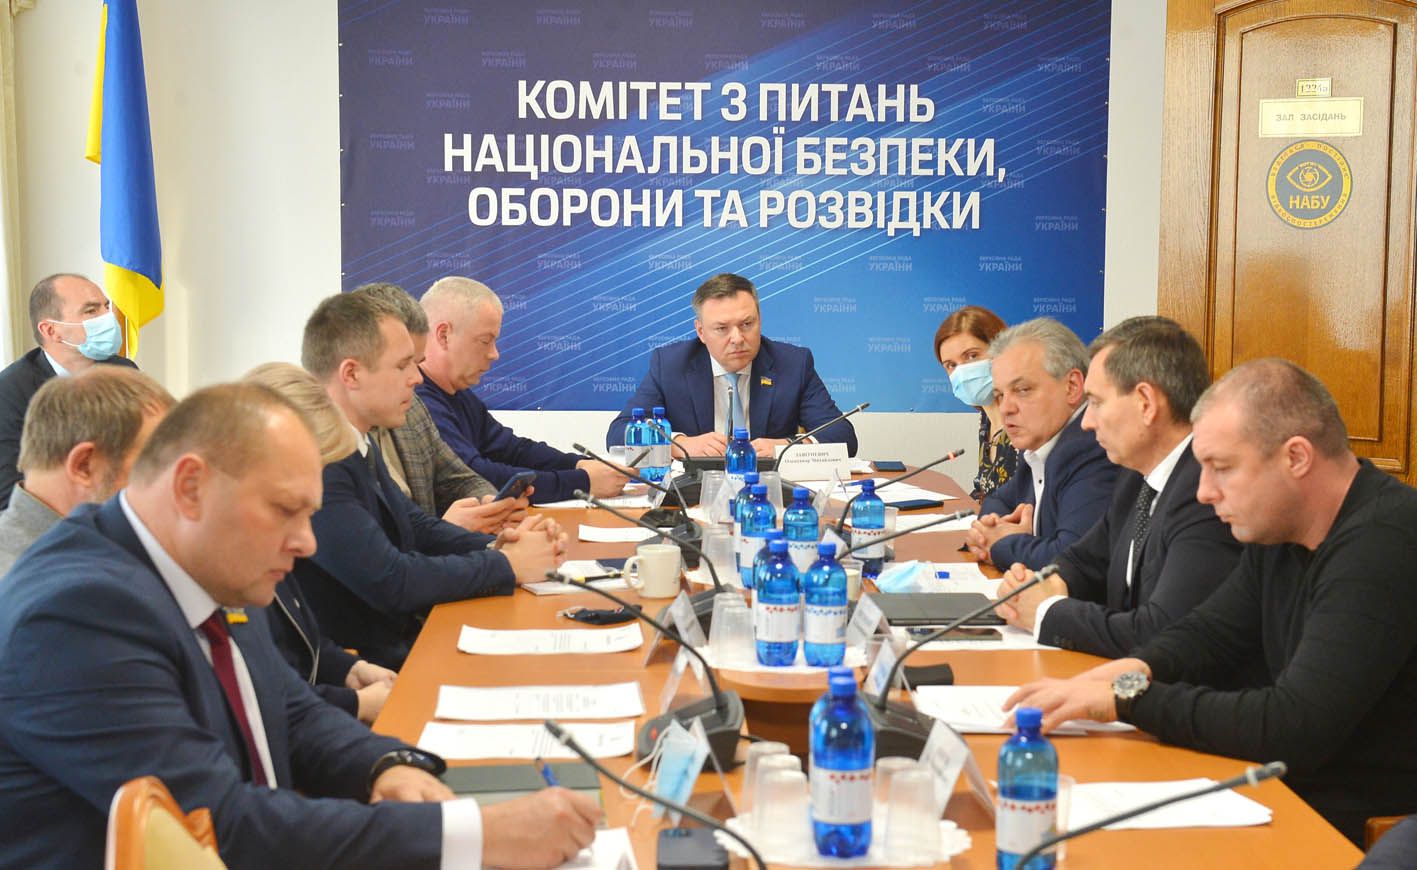 Состоялось заседание Комитета по вопросам национальной безопасности, обороны и разведки